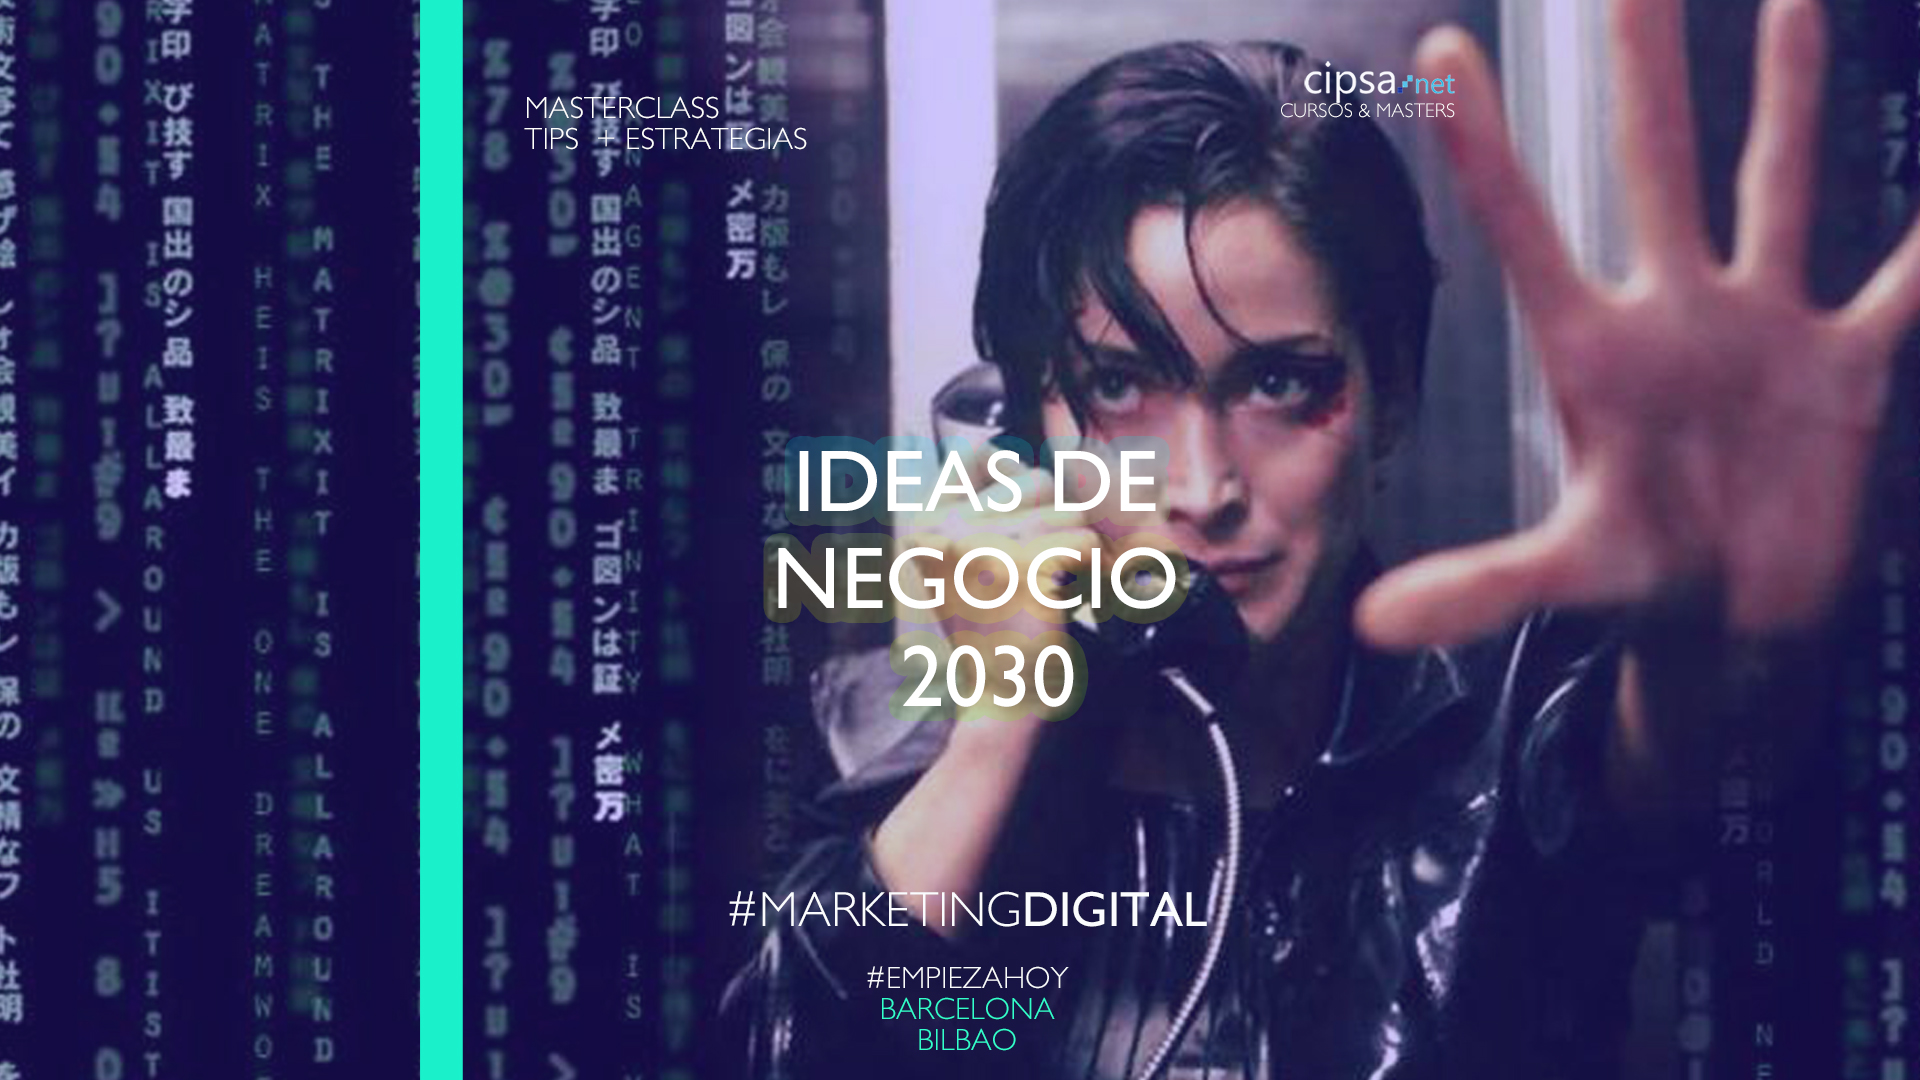 ideas de negocio 2030 matrix 2021 tips